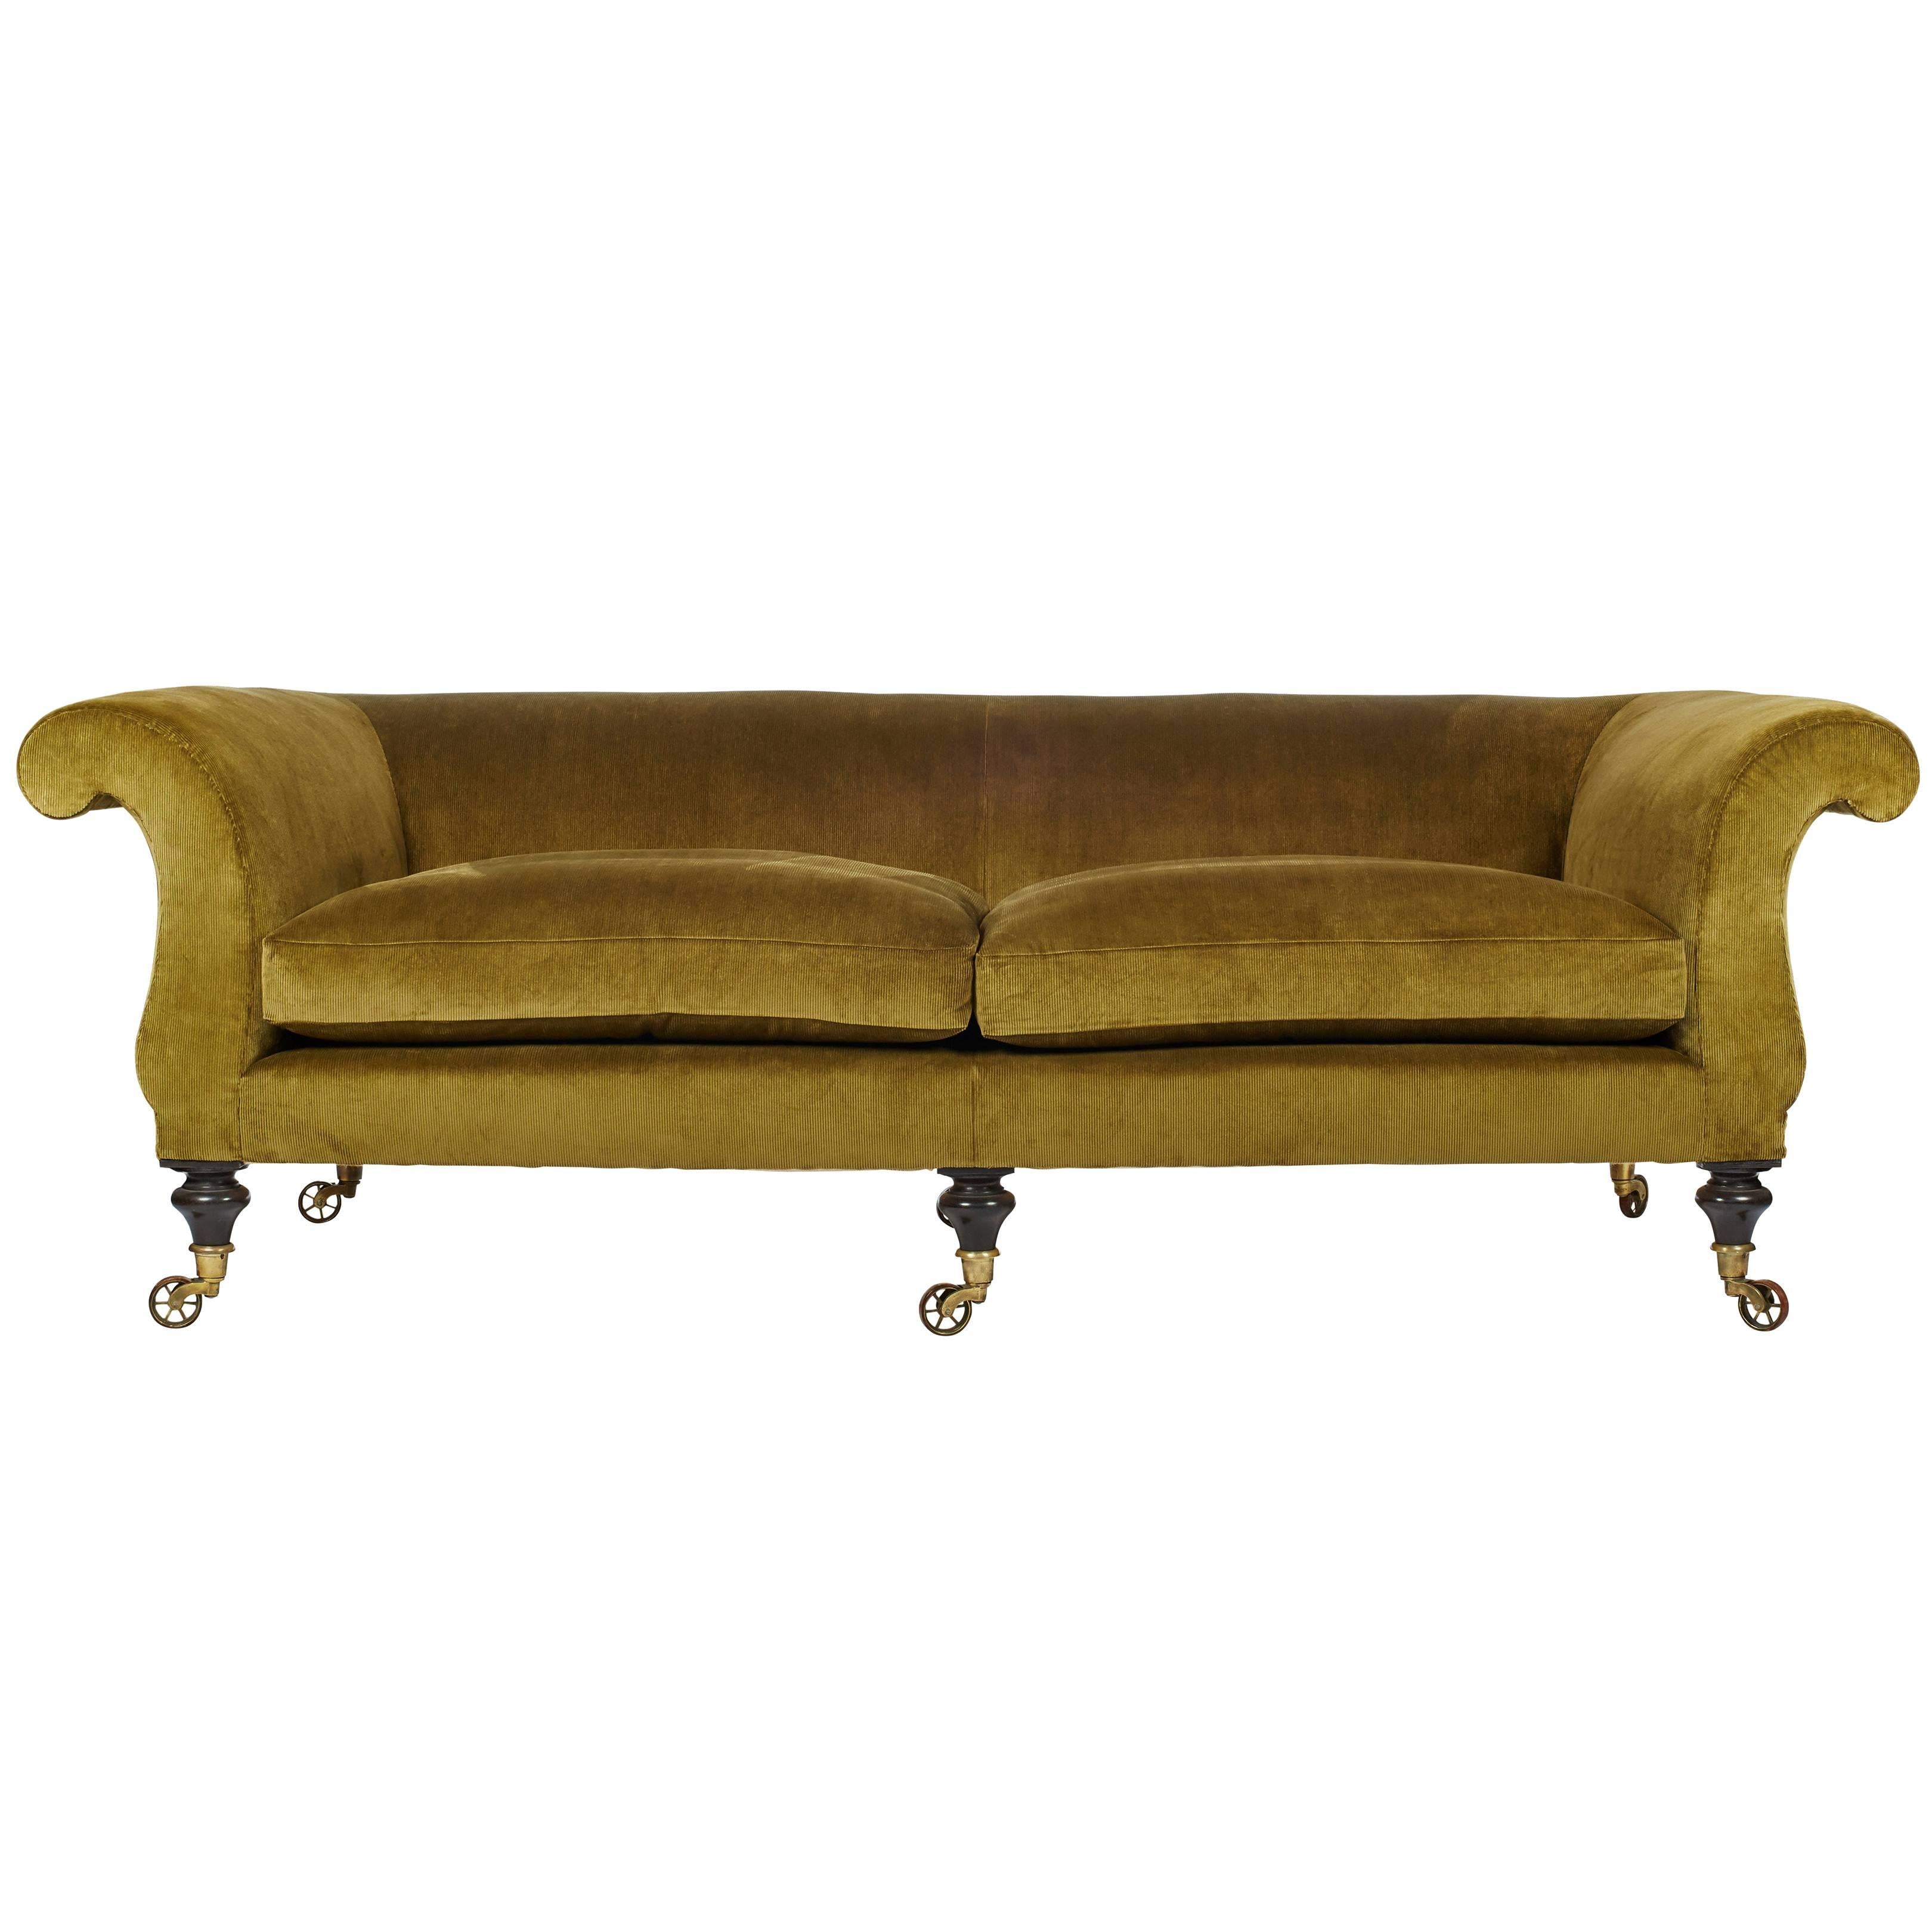 Upholstered 'Kinross' Regency-Inspired Sofa by Ensemblier, Bespoke For Sale